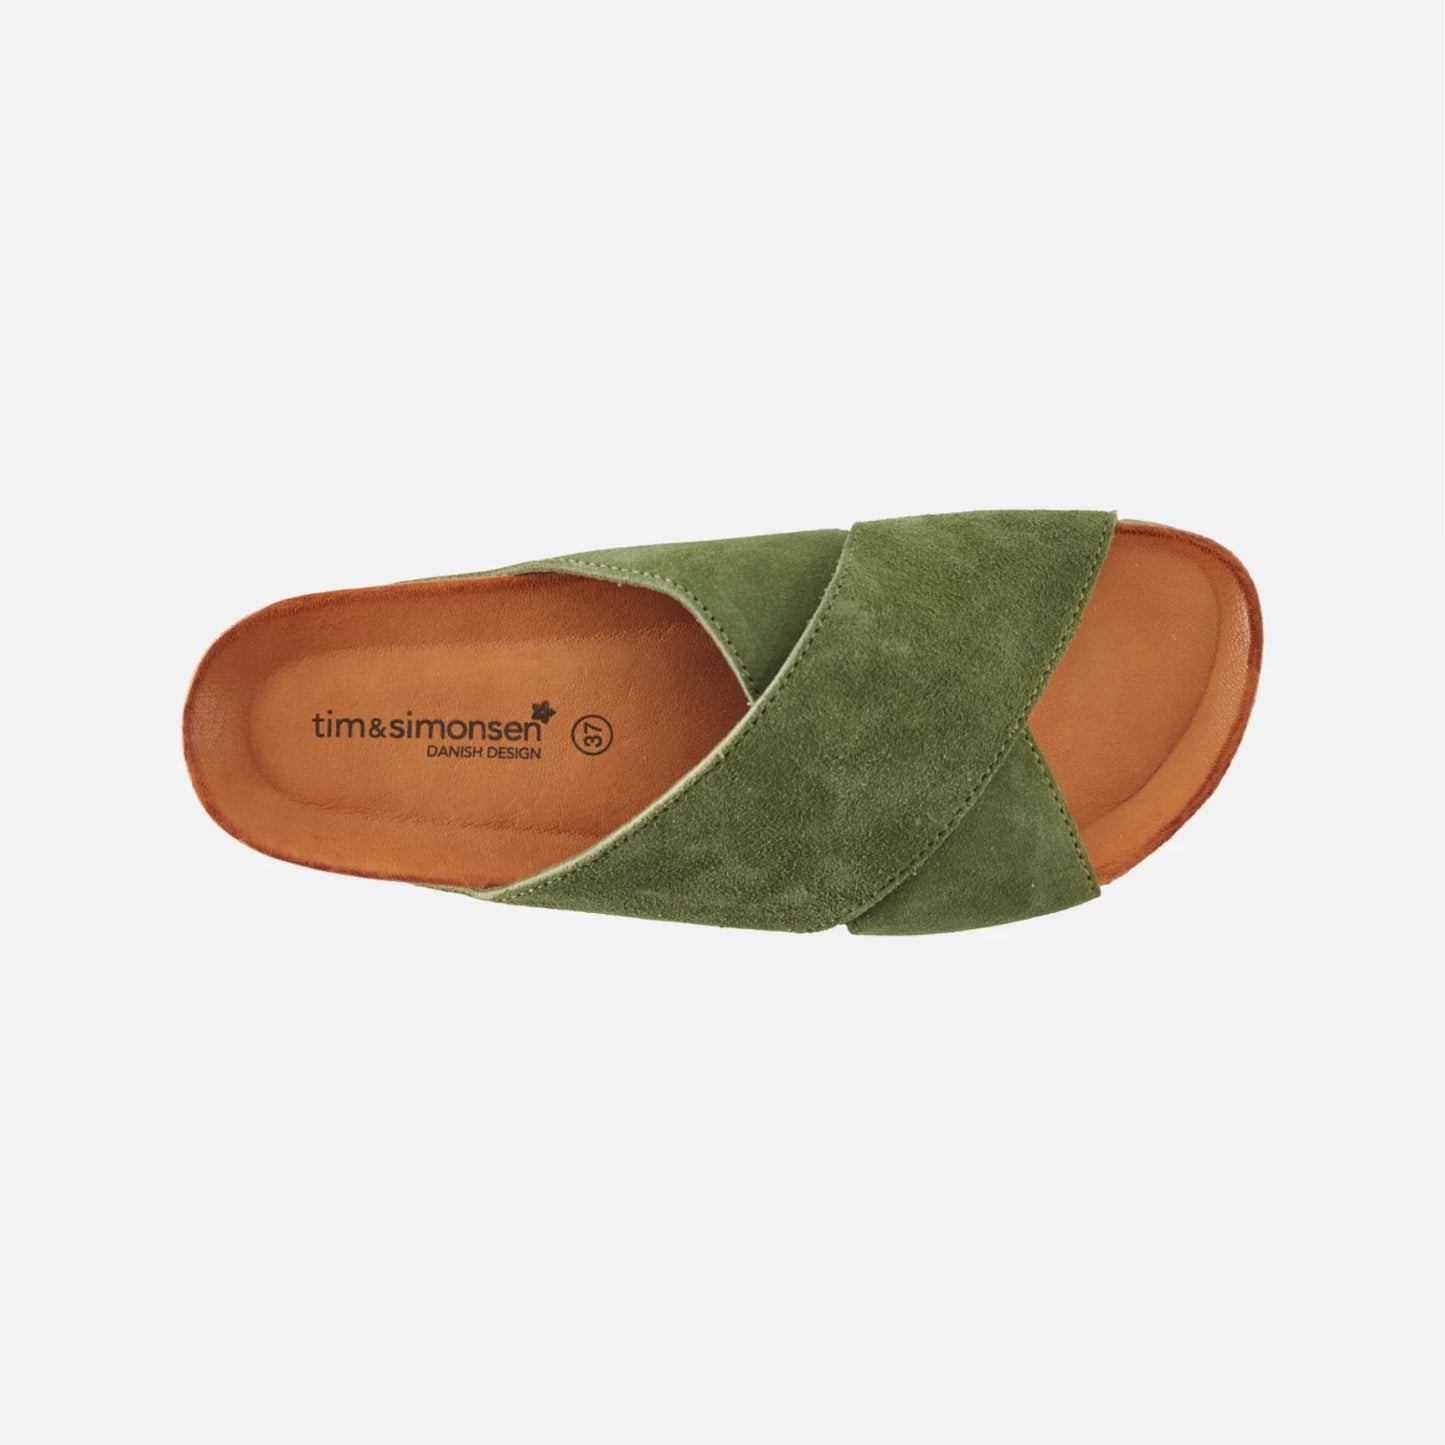 Annet sandaler fra Tim & Simonsen i Musgo Green (oppefra)